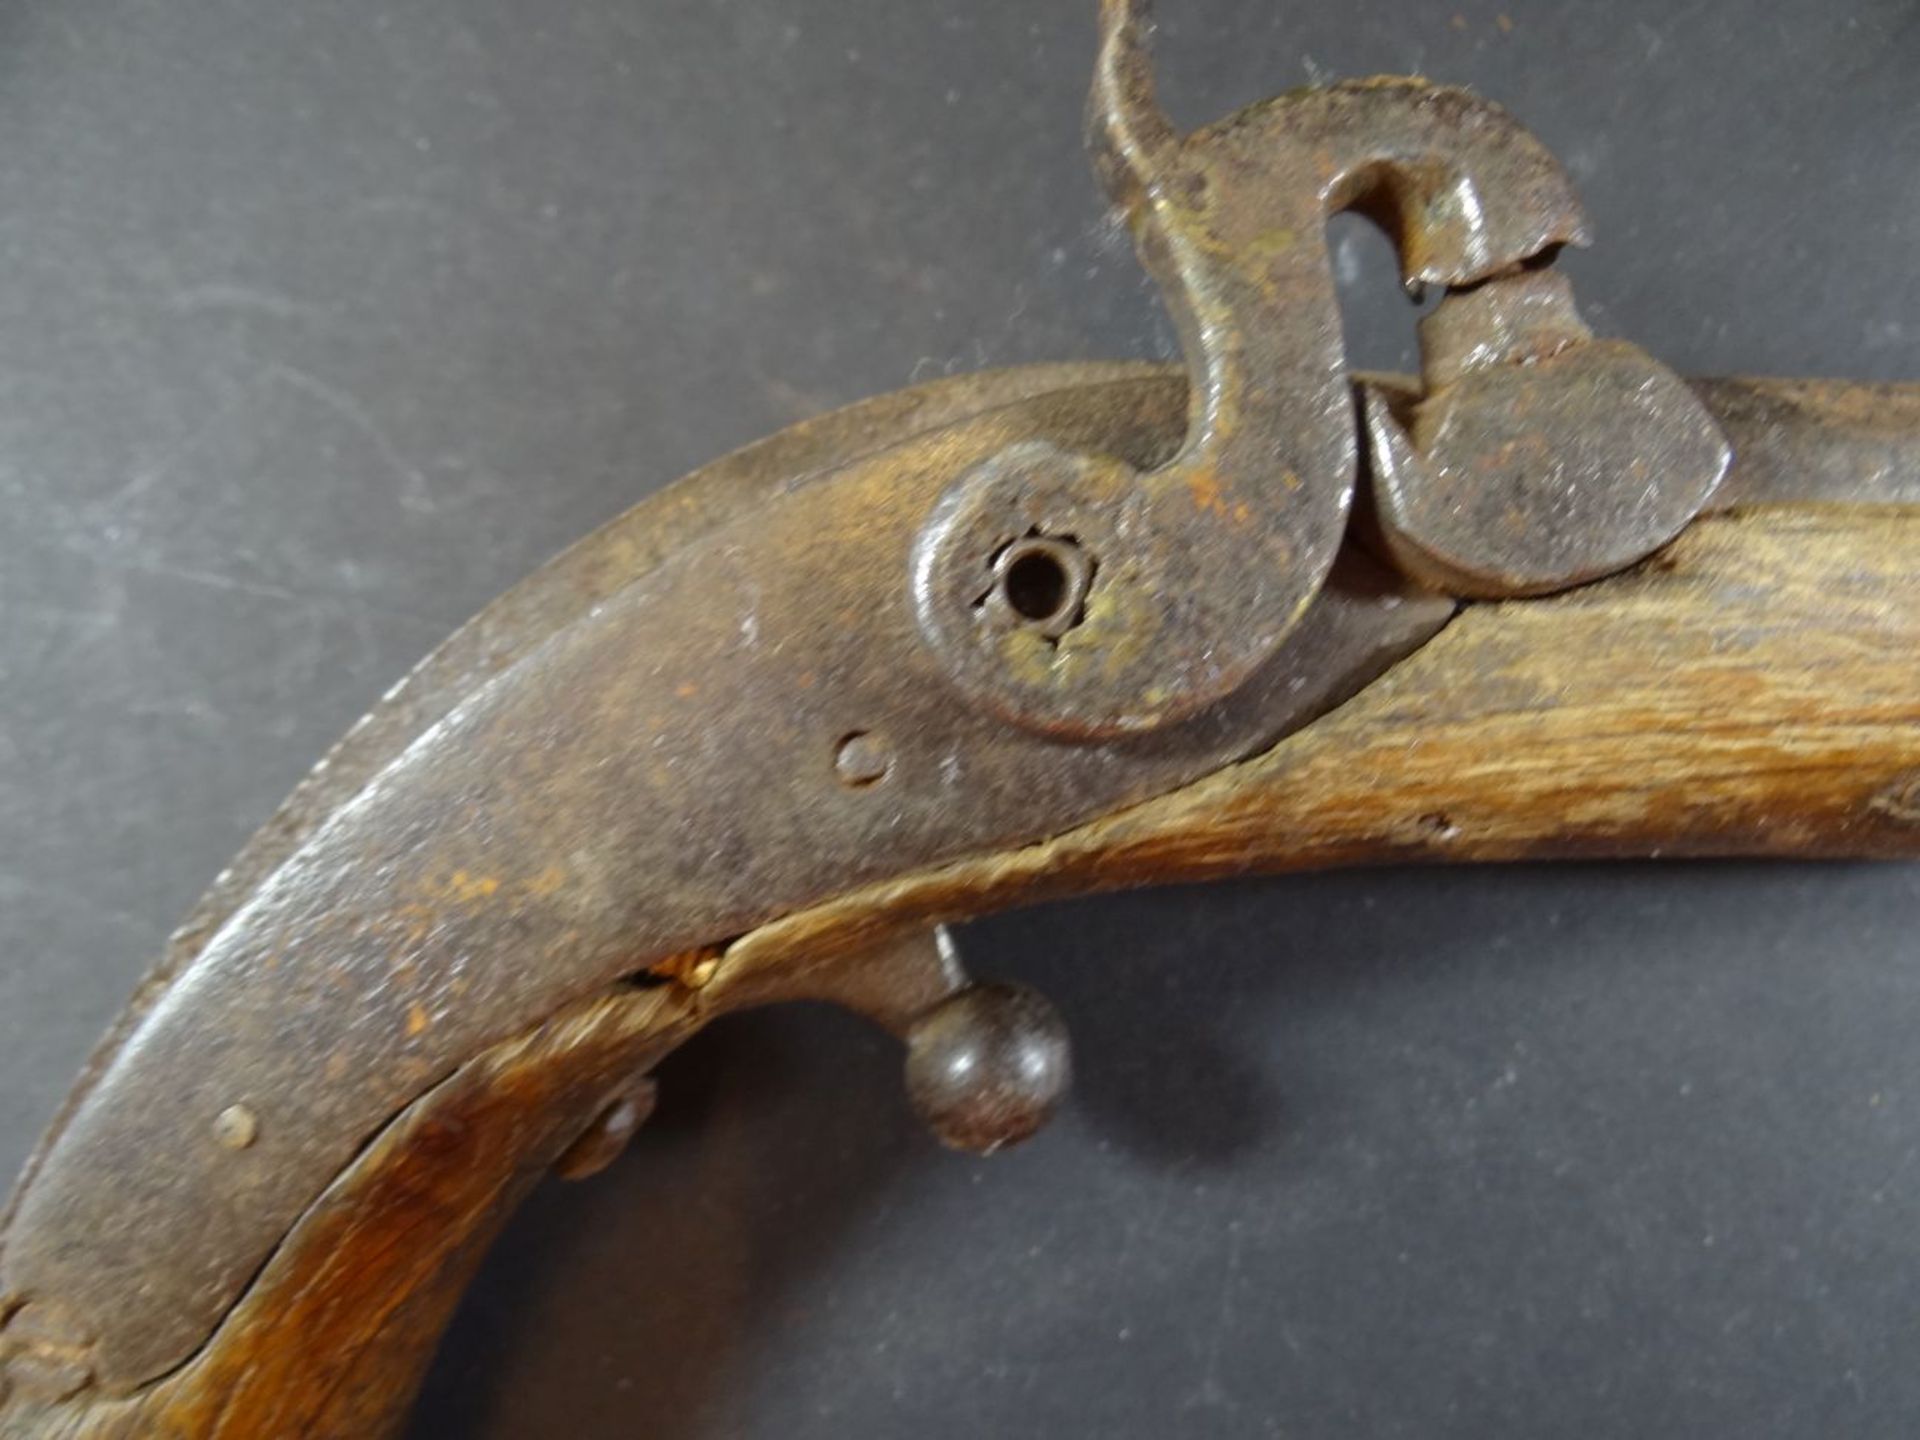 kl. Steinschloss Pistole,  Holz beschädigt, Altersspuren, L-26 cm - Bild 2 aus 5